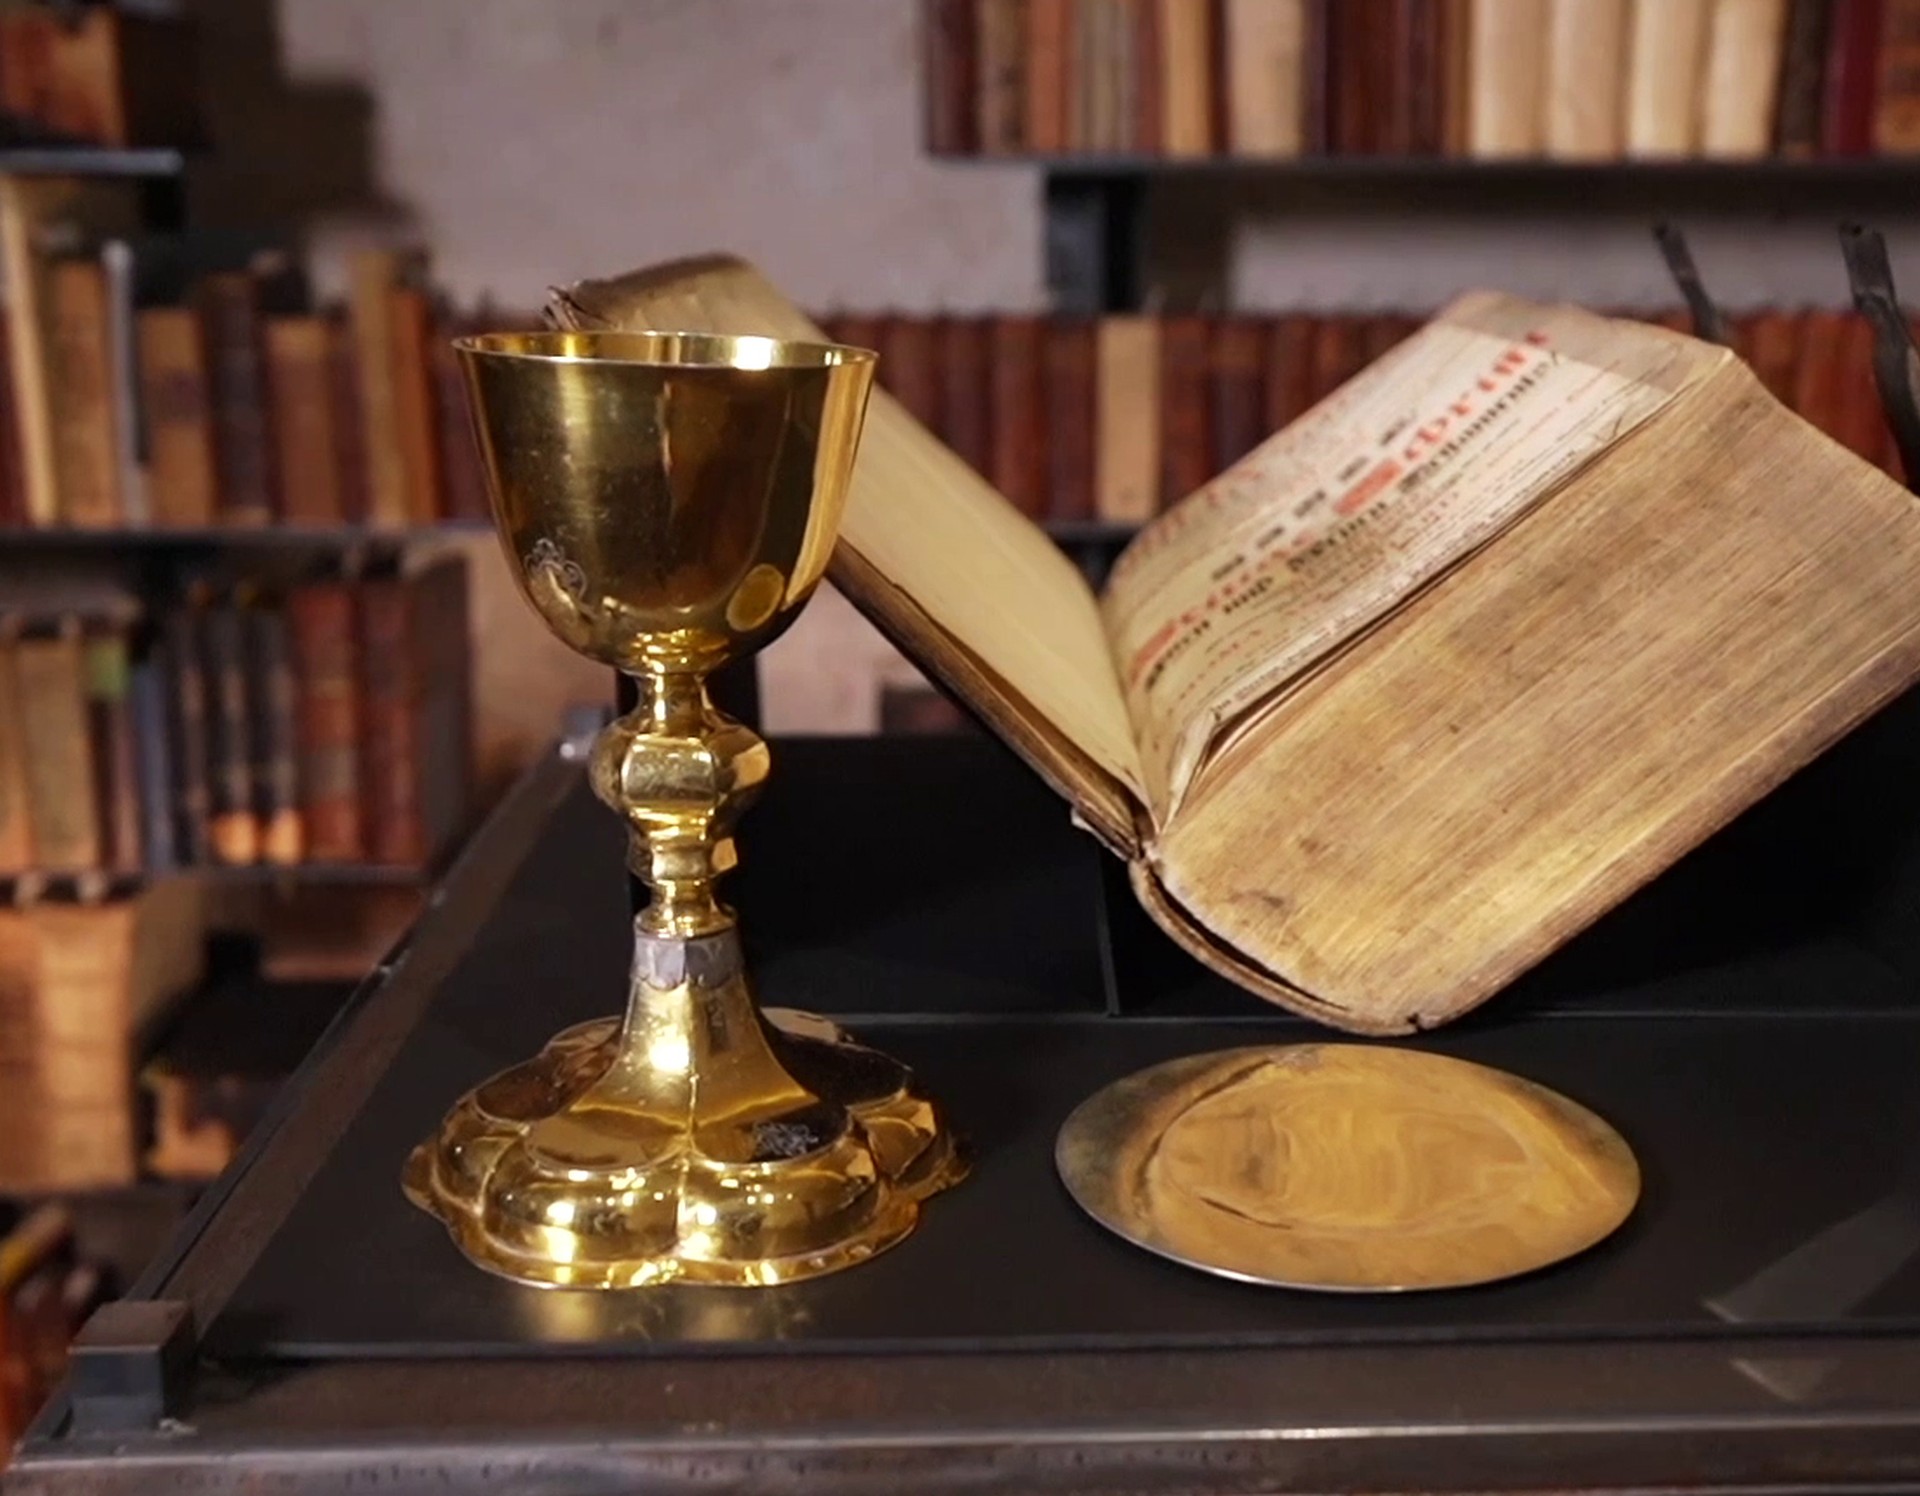 Ein goldener Kelch steht neben einer sehr alten, aufgeschlagenen Bibel. Beide sind Exponate aus dem Kloster Dalheim.